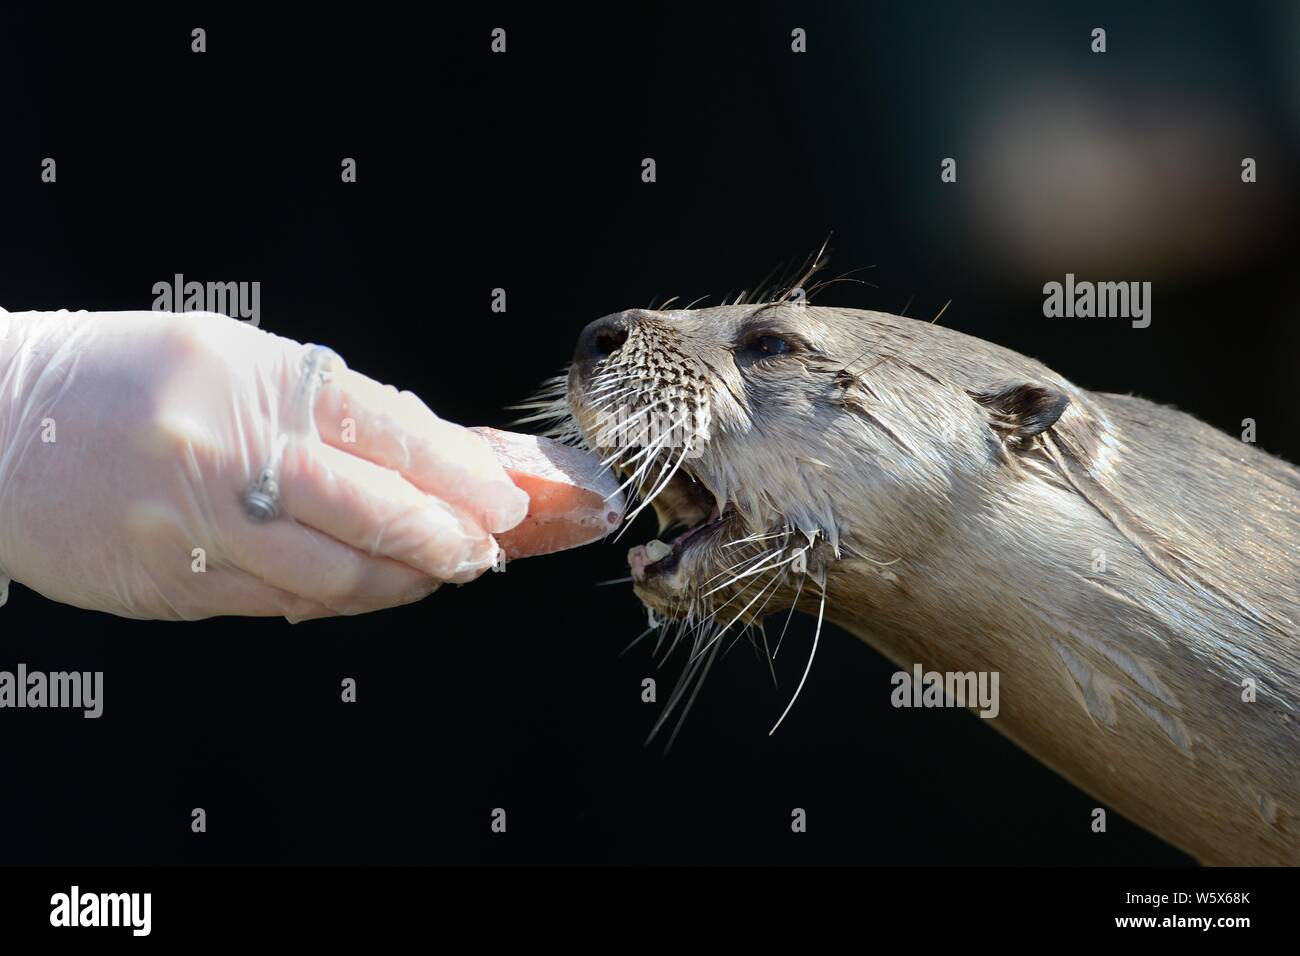 North American River loutre (Lutra canadensis) d'être nourris à la main avec un morceau de saumon, le Dartmoor Otter Sanctuary, Devon, UK, mars. Banque D'Images